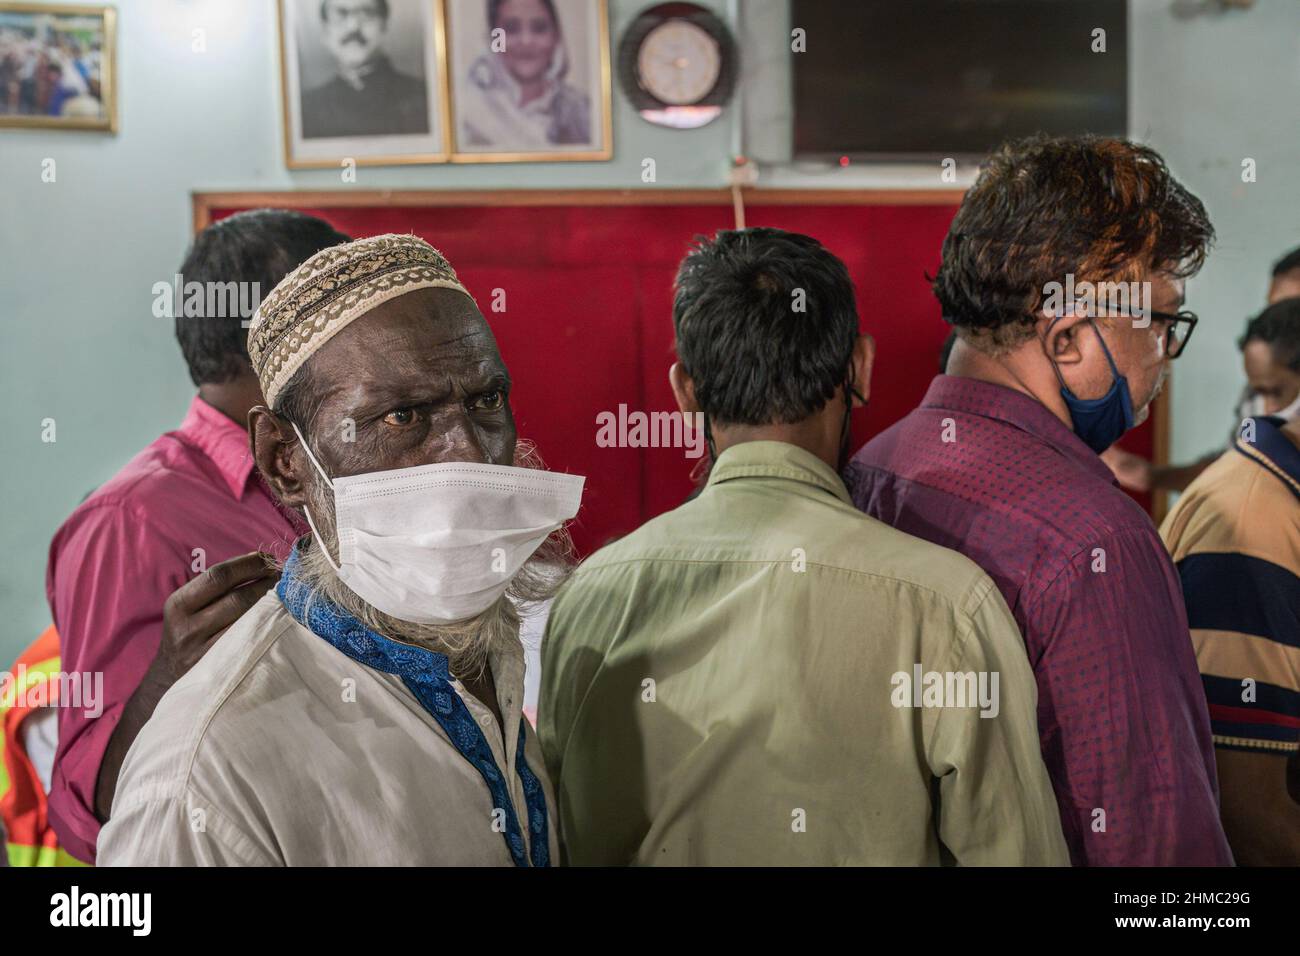 Un homme avec un masque de protection déchiré dans une file d'attente attendant de recevoir le vaccin de SARSCOV2 pendant la campagne de vaccination.a Dhaka, Bangladesh, la capitale du pays le plus densément peuplé du monde, la pandémie de COVID est une histoire chaotique depuis que les restrictions gouvernementales ont commencé à tenter de prévenir les infections et les décès. Dhaka est une mégapole croissante avec plus de 20 millions d'habitants au bruit et à la ruée quotidienne, mais sans les infrastructures nécessaires et avec plus de 60% de sa population travaillant de manière informelle et embourbée dans la pauvreté, le chaos s'est intensifié à tous les niveaux. (Photo d'Israël Fuguemann Banque D'Images